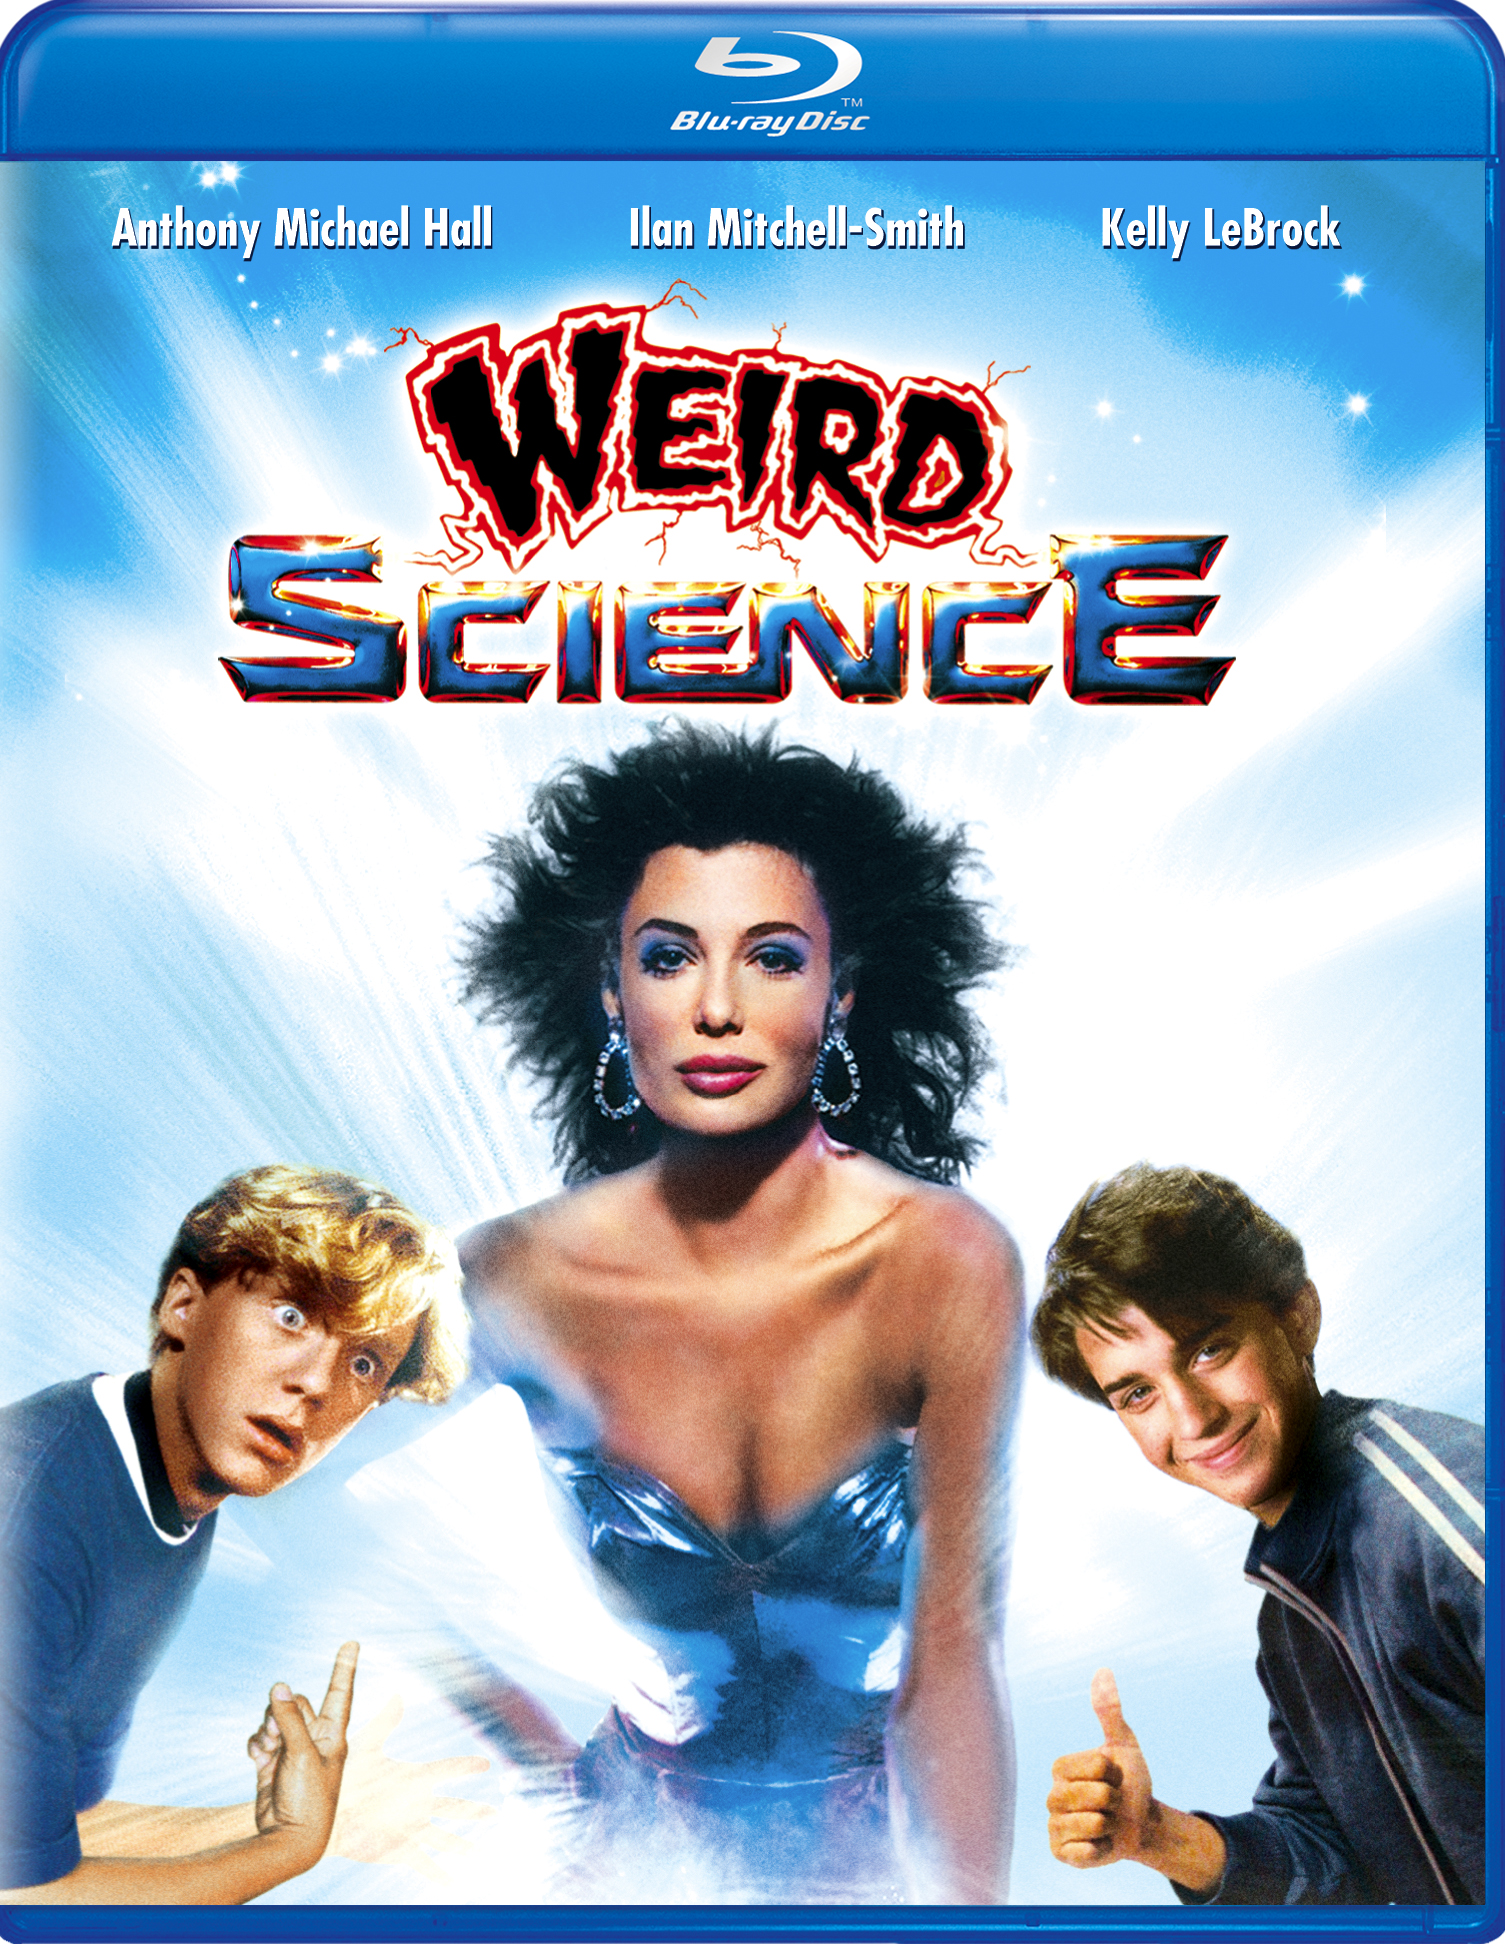 1985 Weird Science